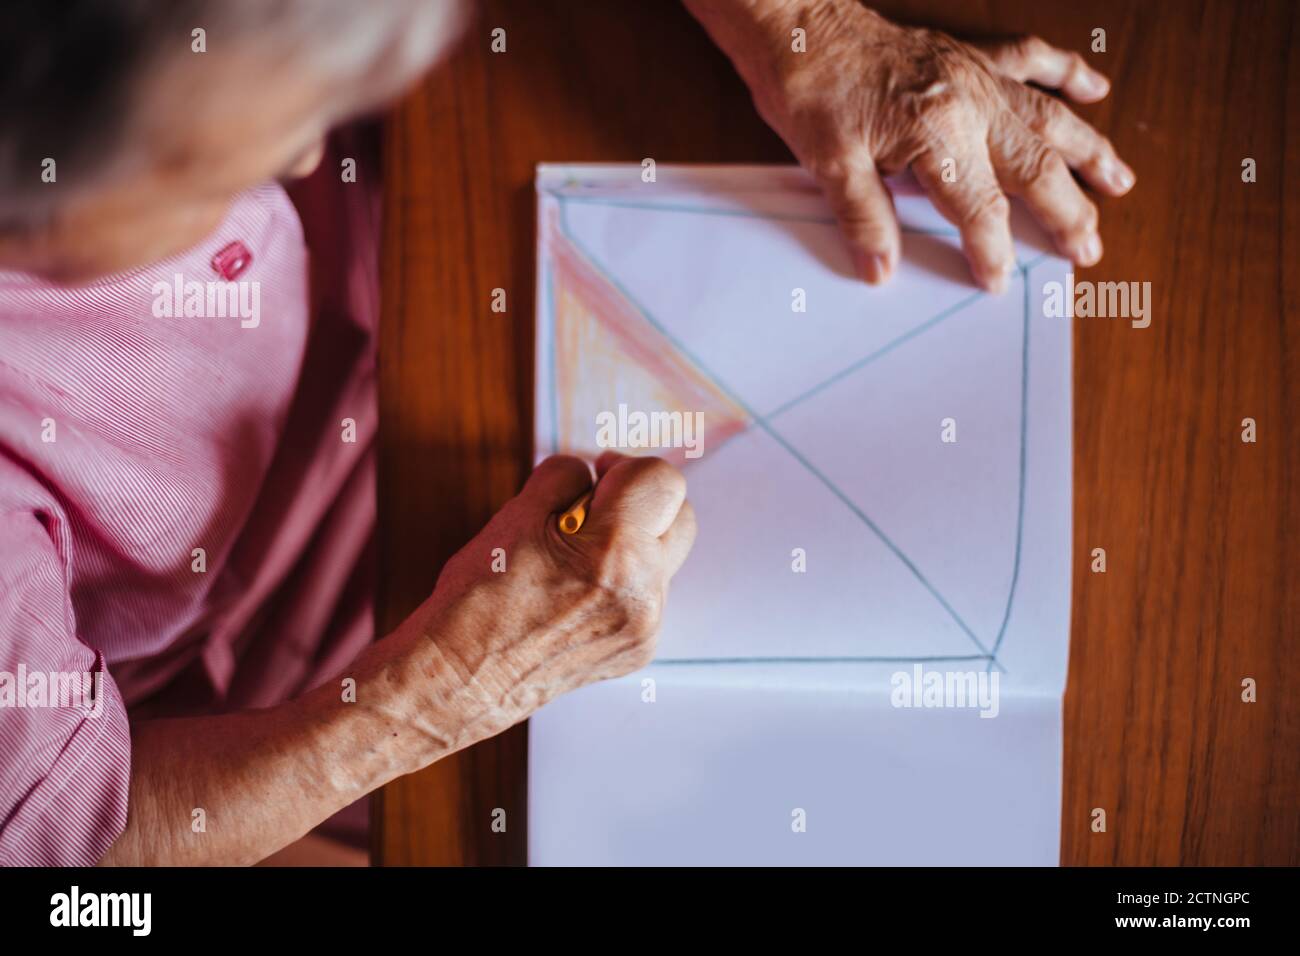 Vue de dessus d'une femme âgée atteinte de problèmes de santé mentale de la maladie d'Alzheimer peint sur un carnet à l'intérieur de sa maison Banque D'Images